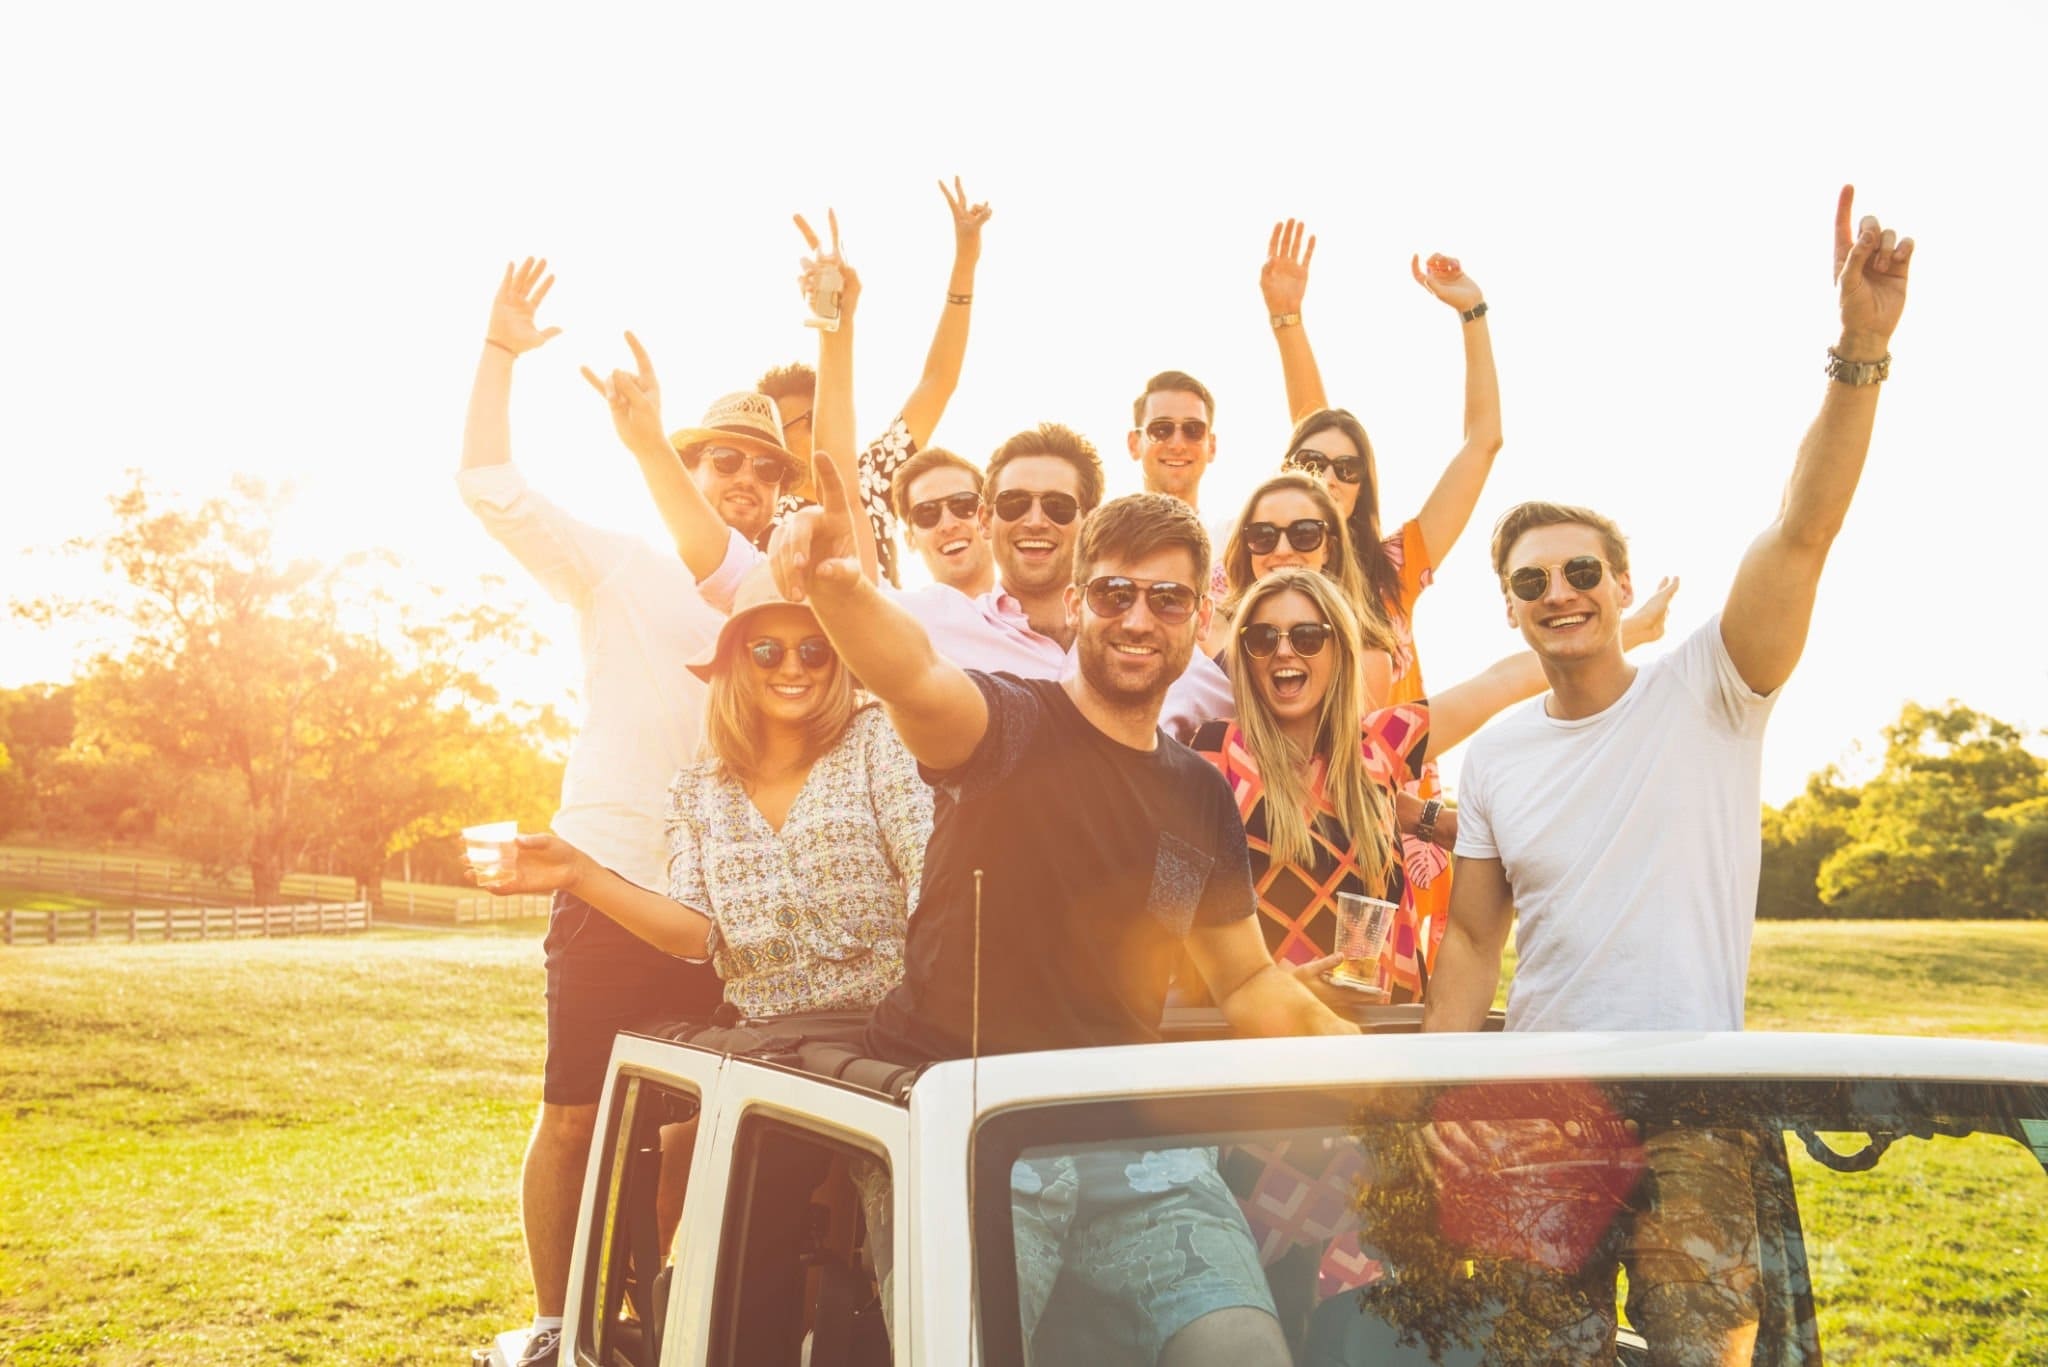 Cinco dicas para viajar de carro com os amigos de forma divertida e segura